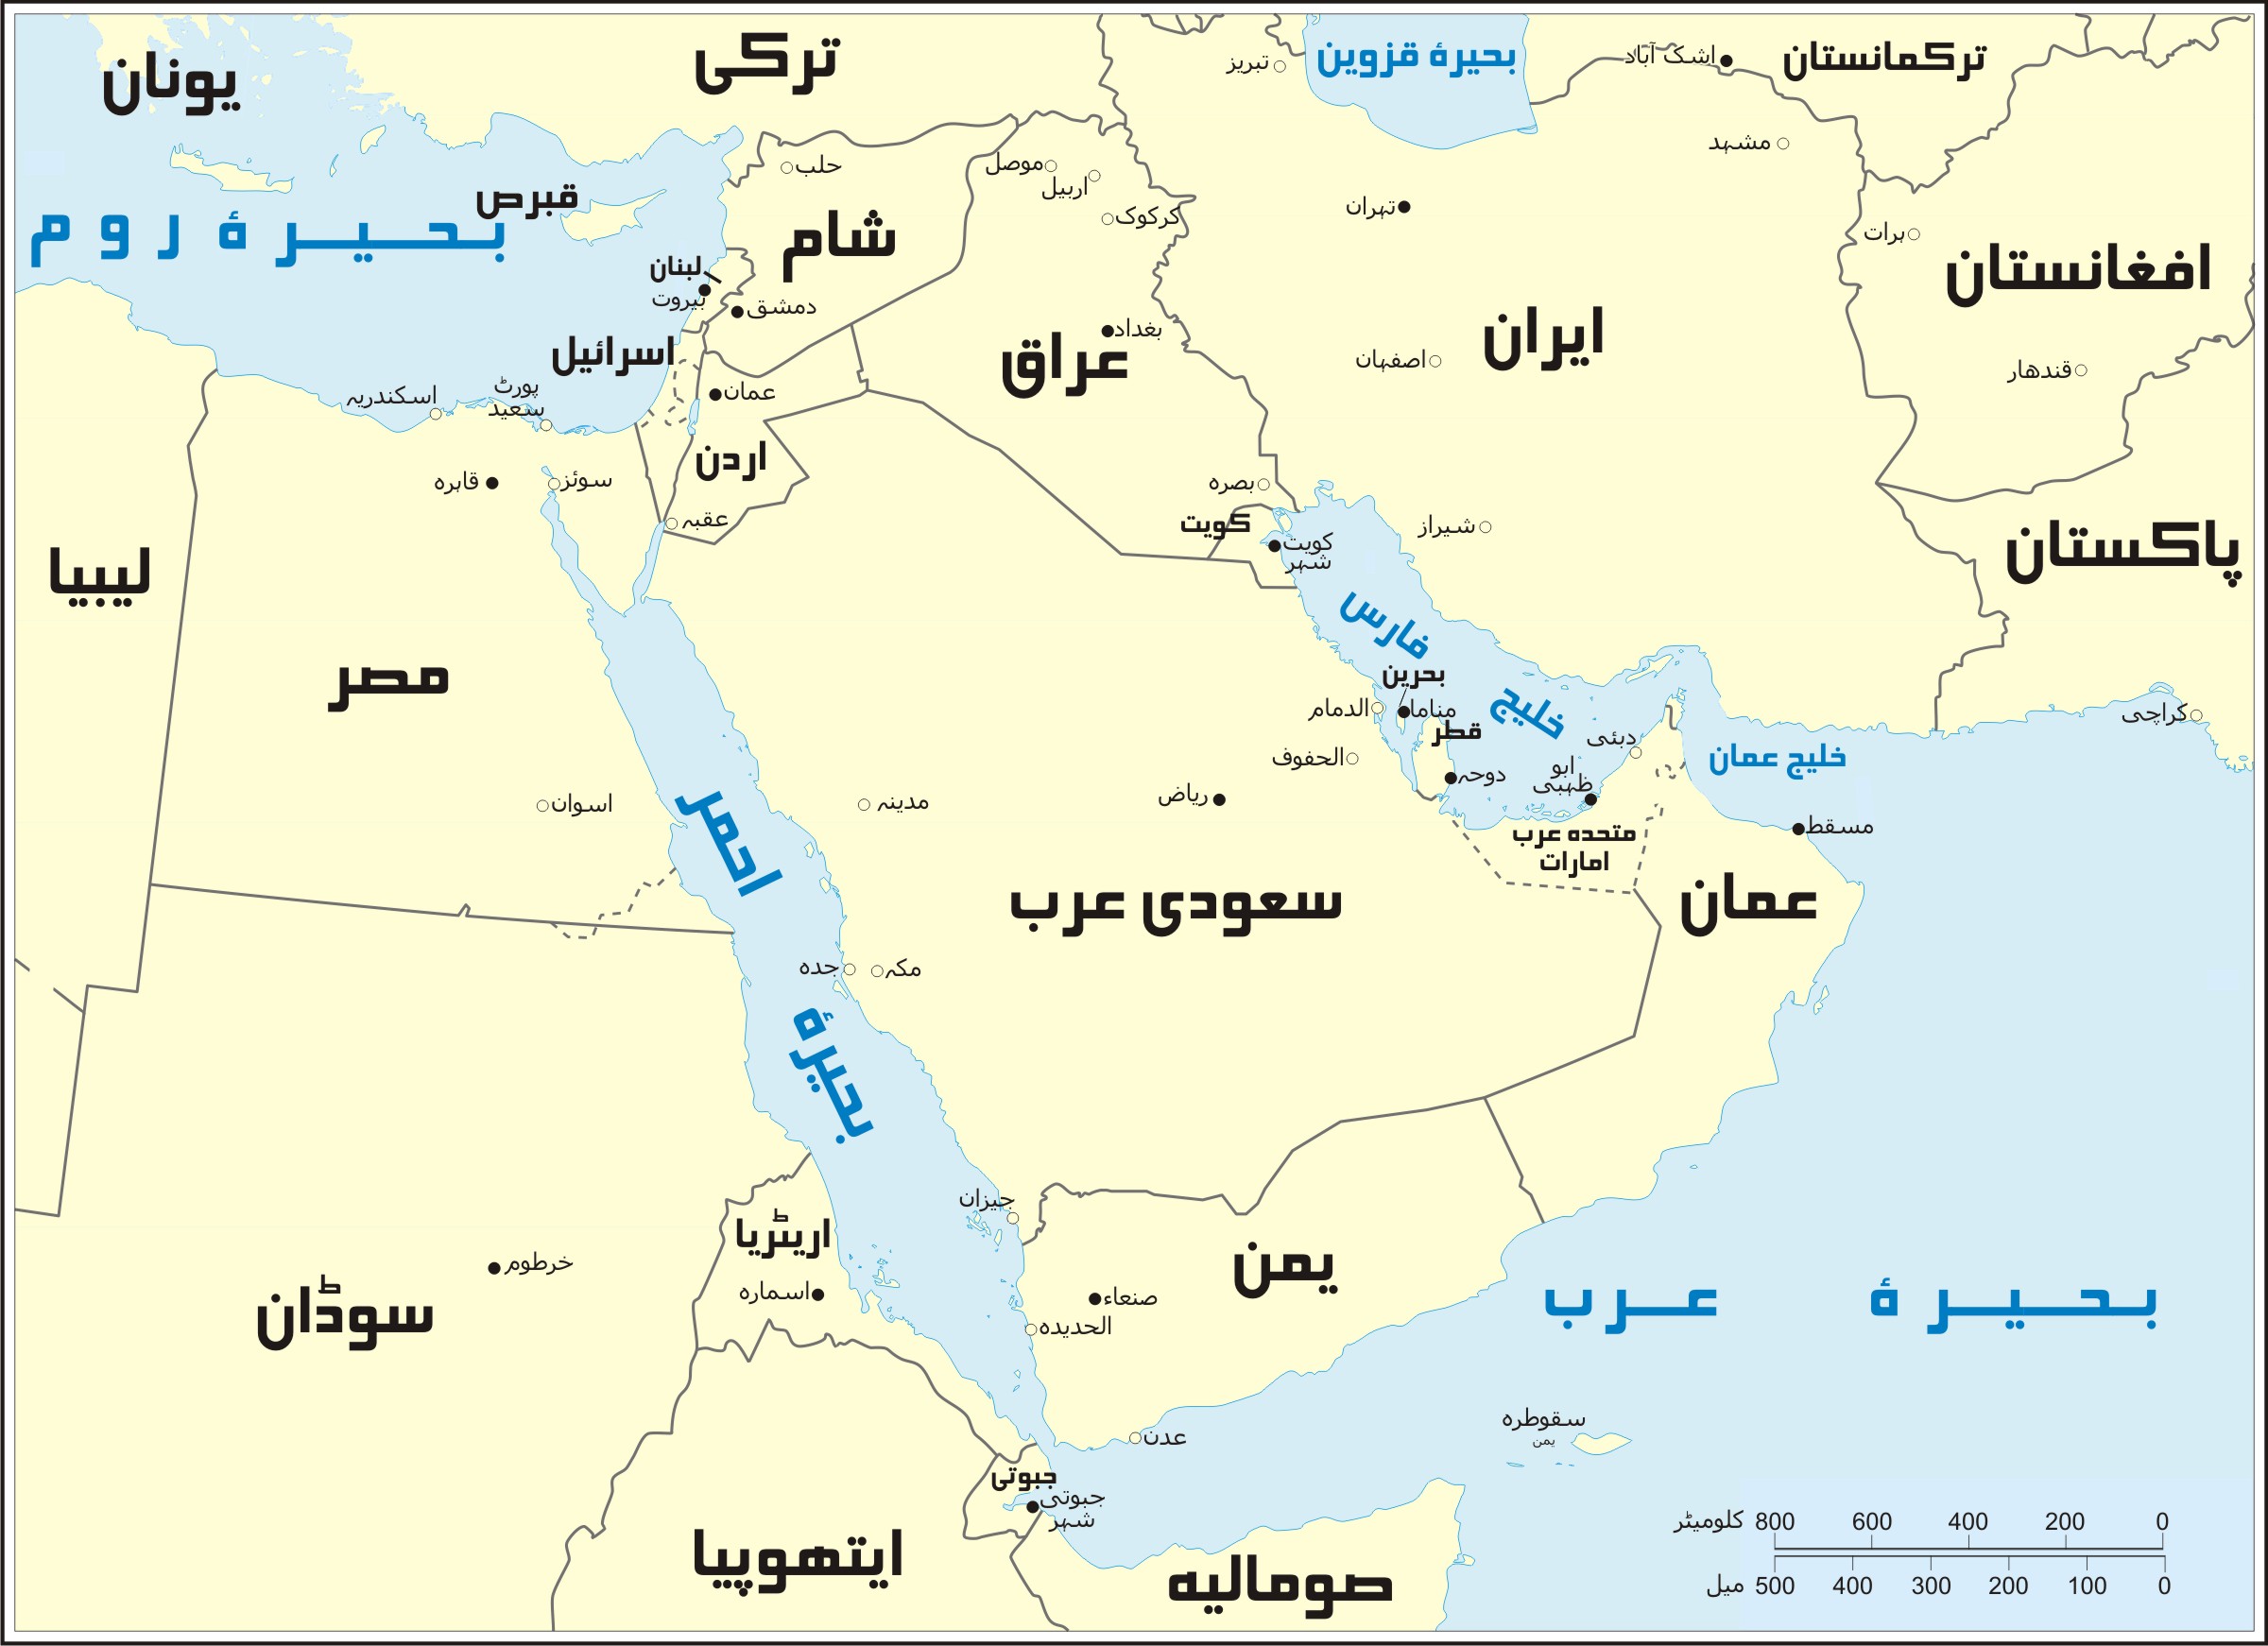 Middle_East_Map_1_Fkehar.jpg